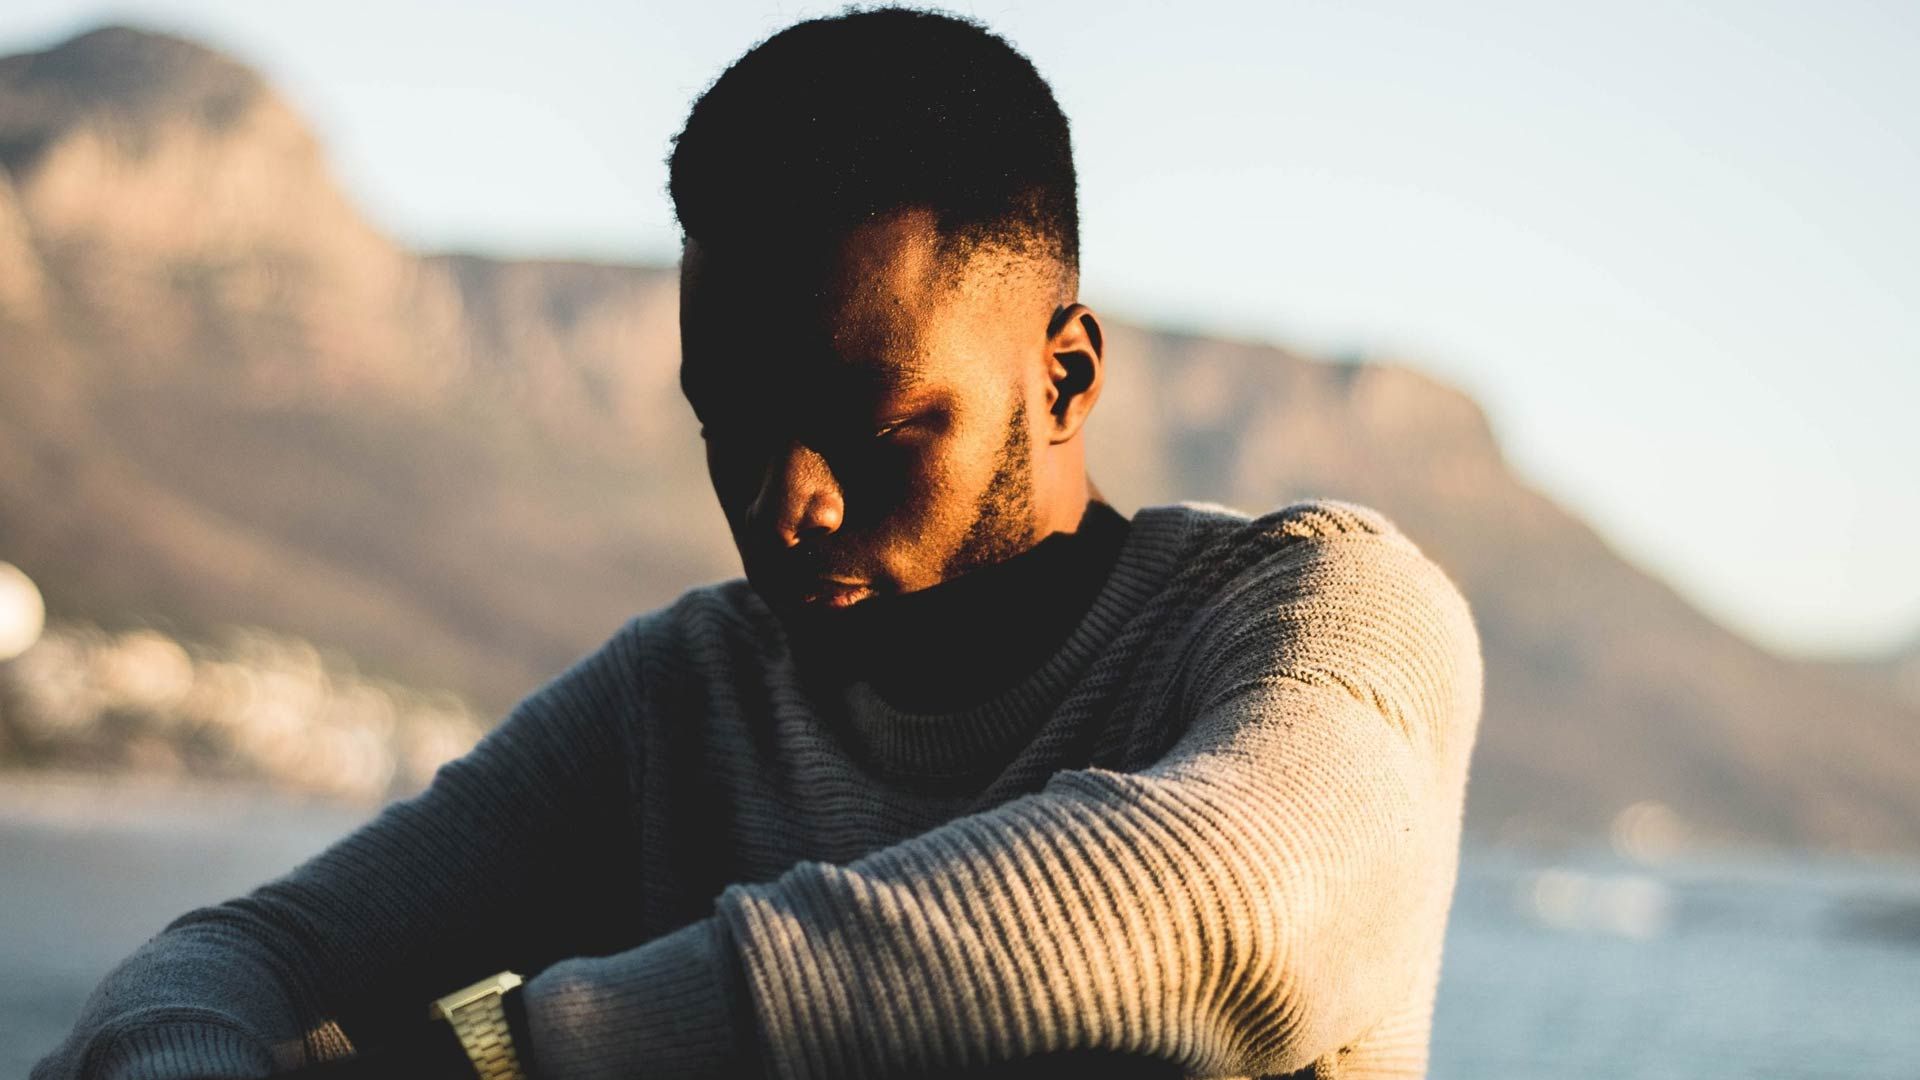 "Estoy bien": cómo hablar con los hombres de tu vida sobre su salud mental